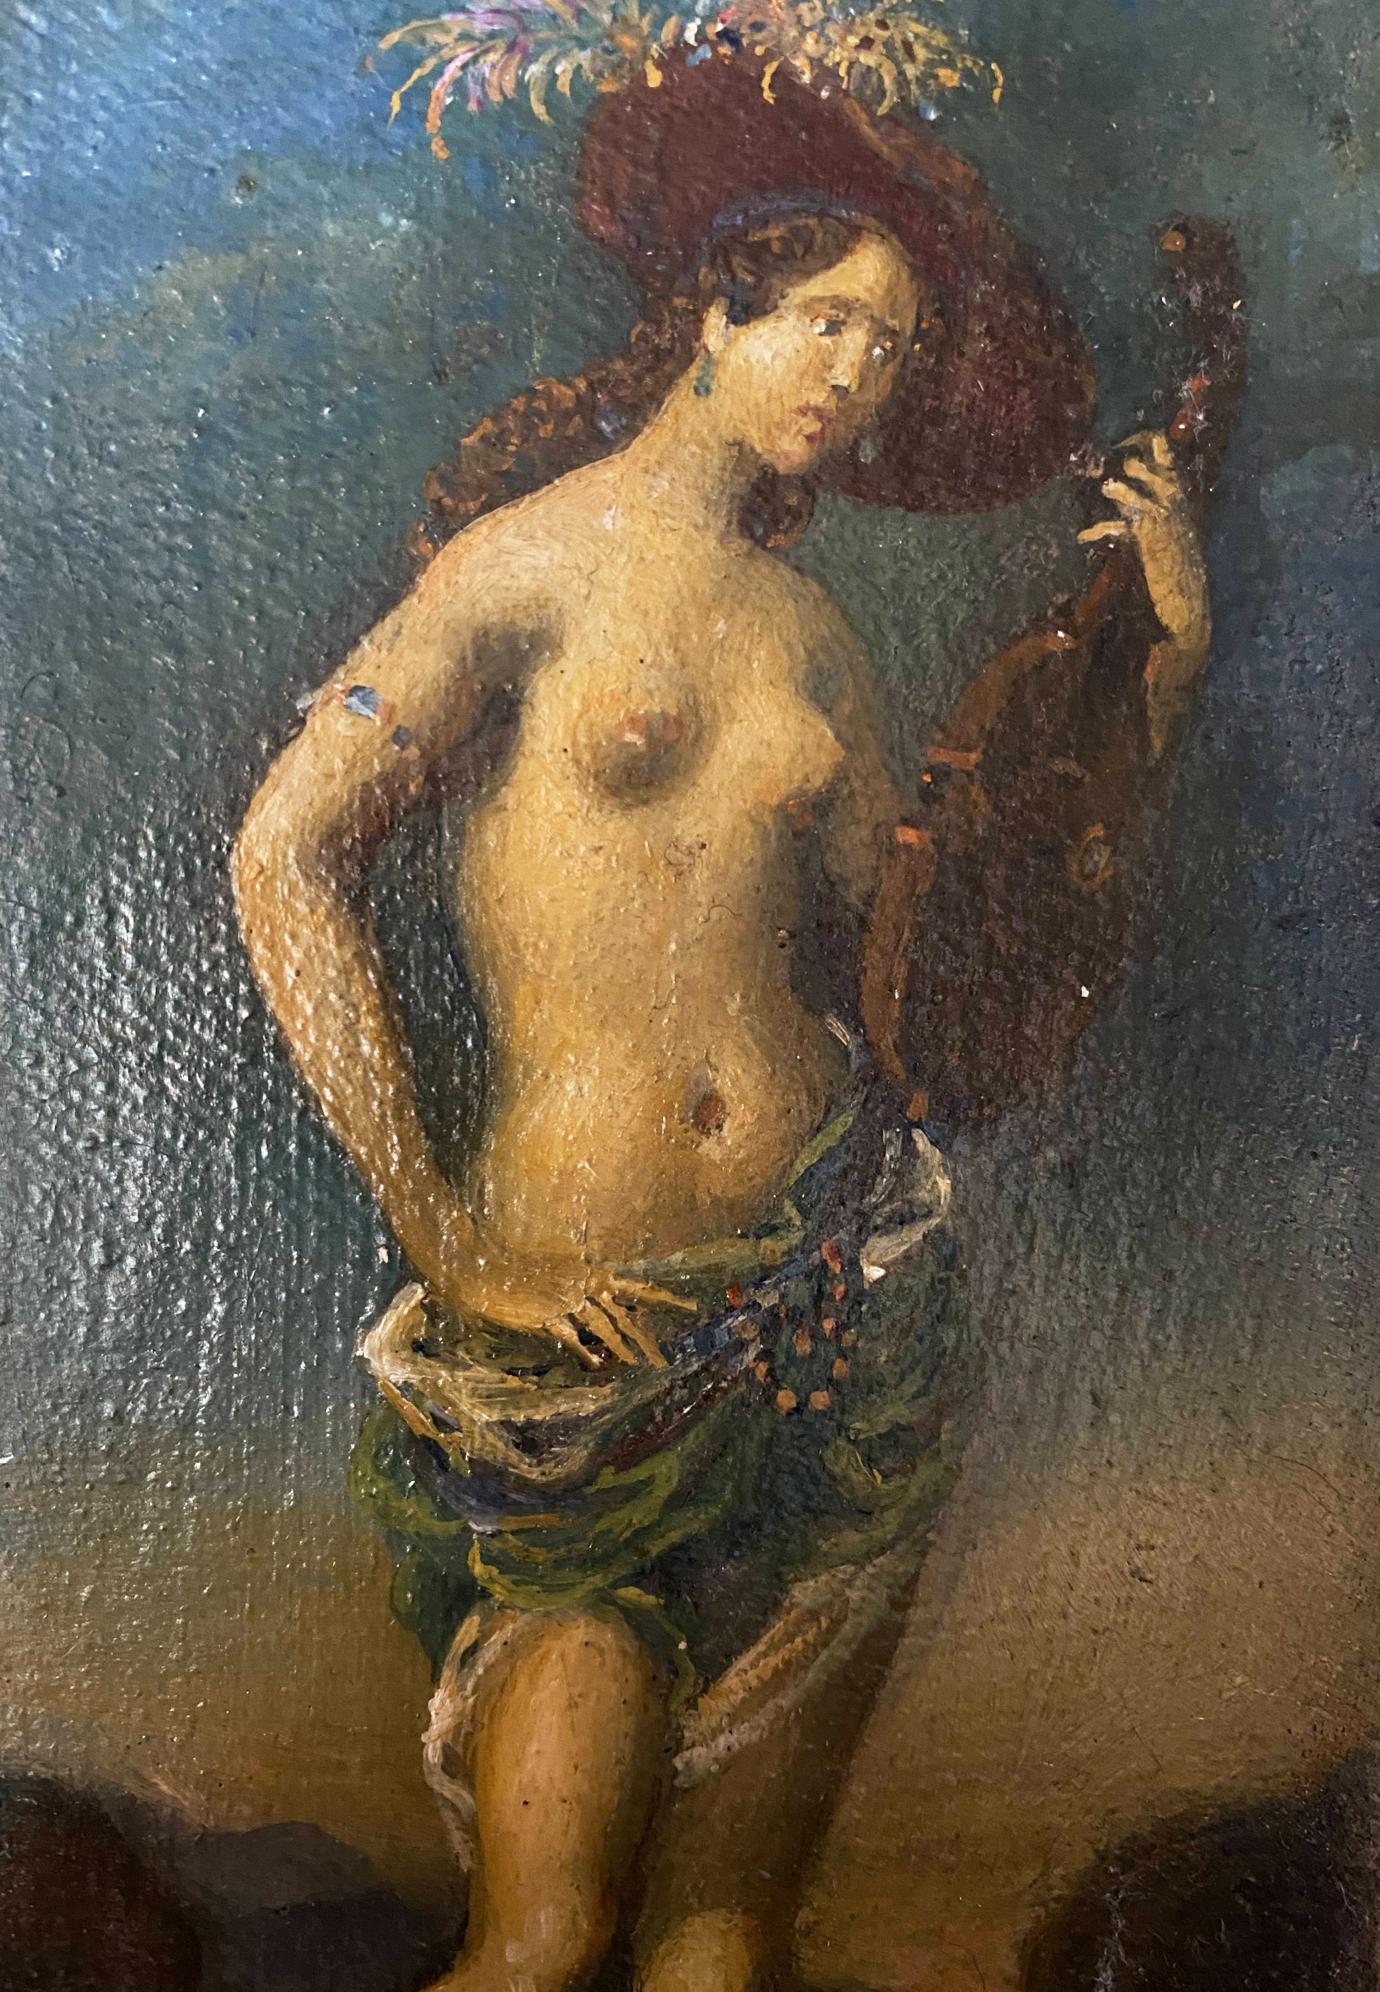 oil portrait painting